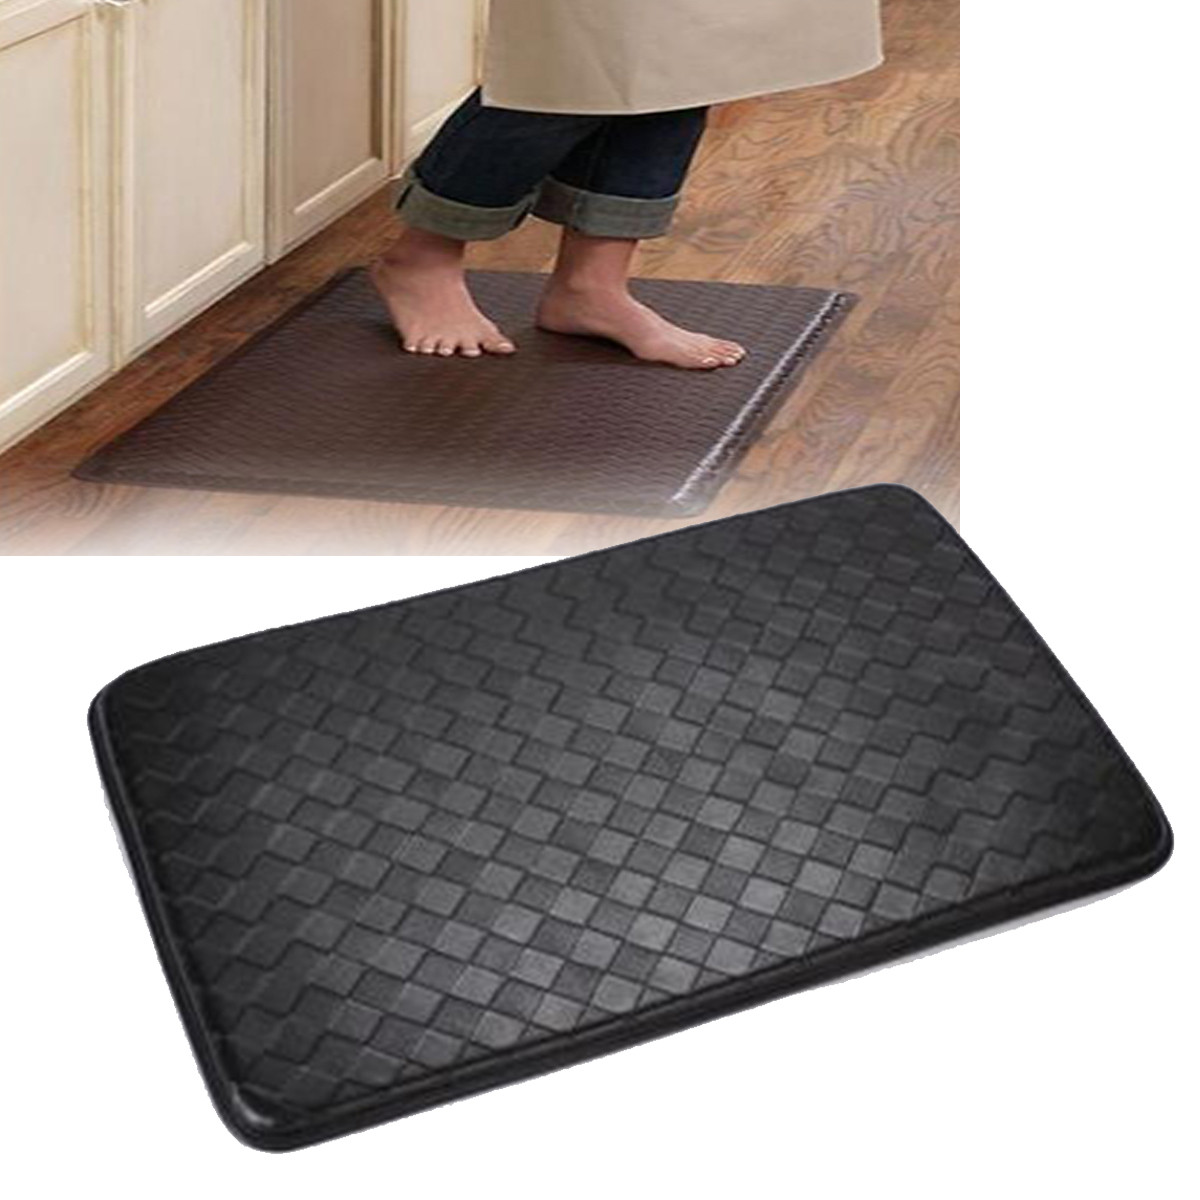 

30' x 20' Anti-Fatigue Cushion Non-Slip Floor Mat Comfort Rug Bath Carpet Black